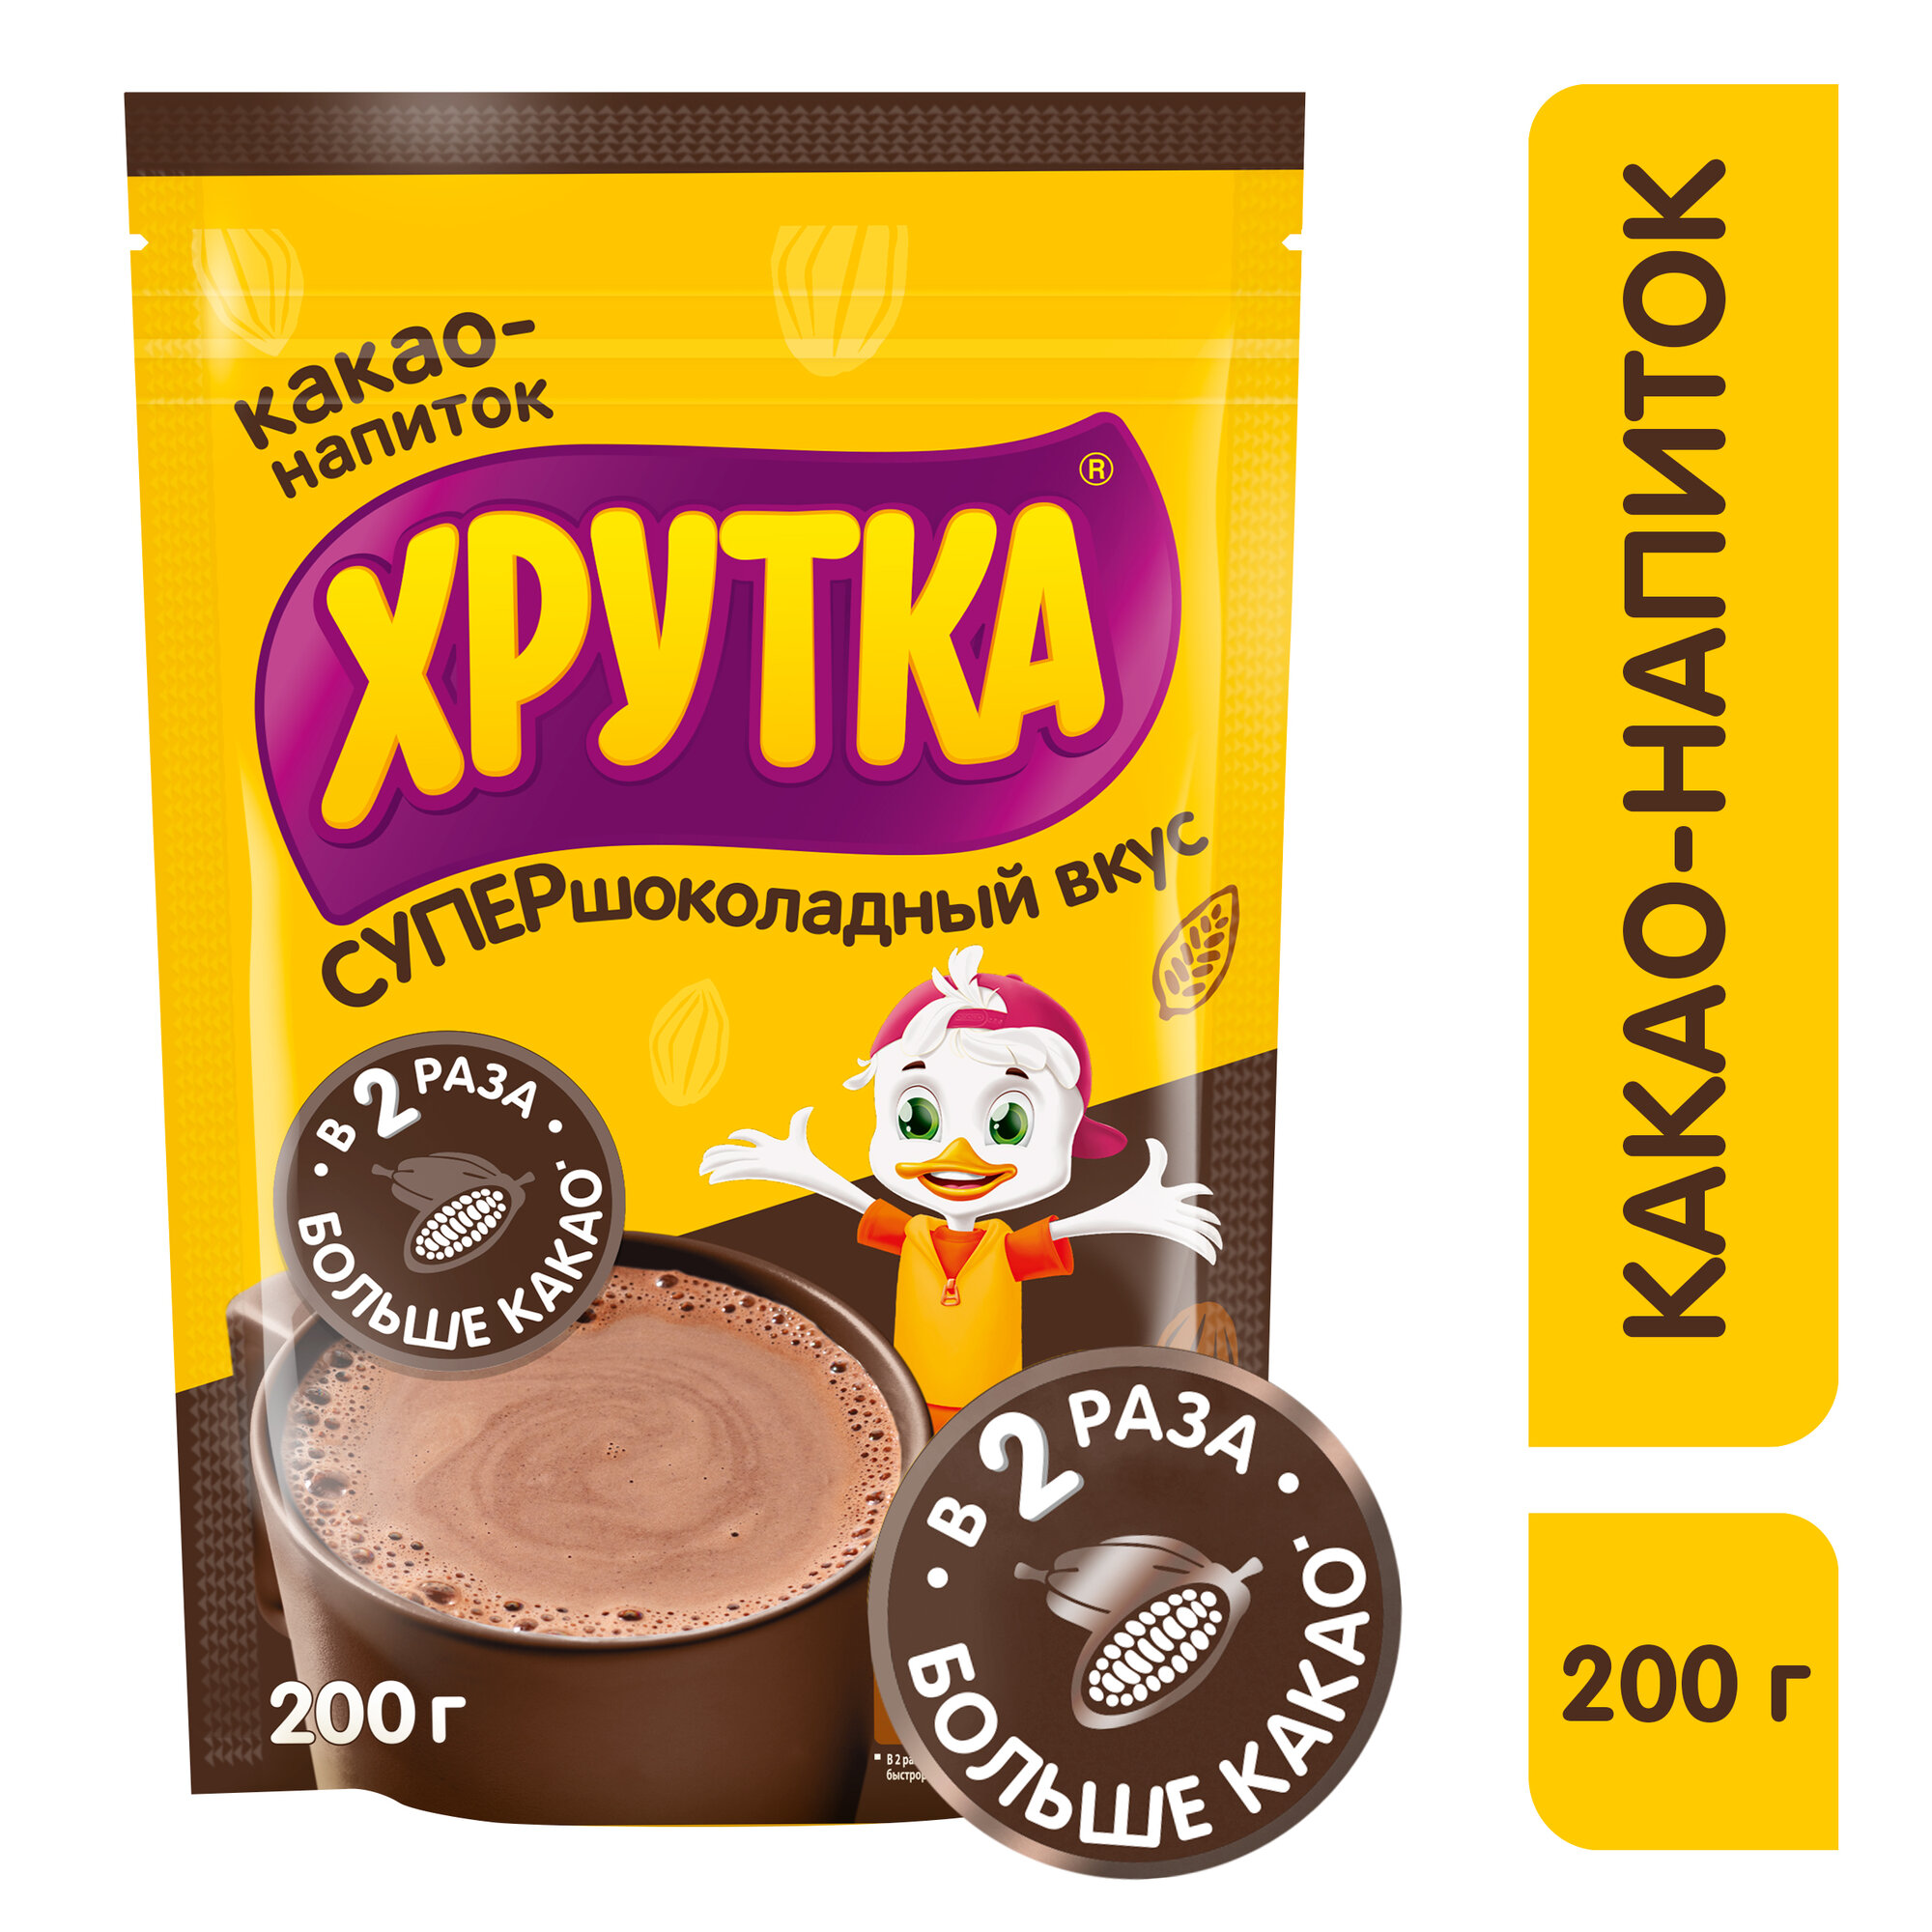 Какао-напиток Хрутка быстрорастворимый Супершоколадный вкус, 200 г